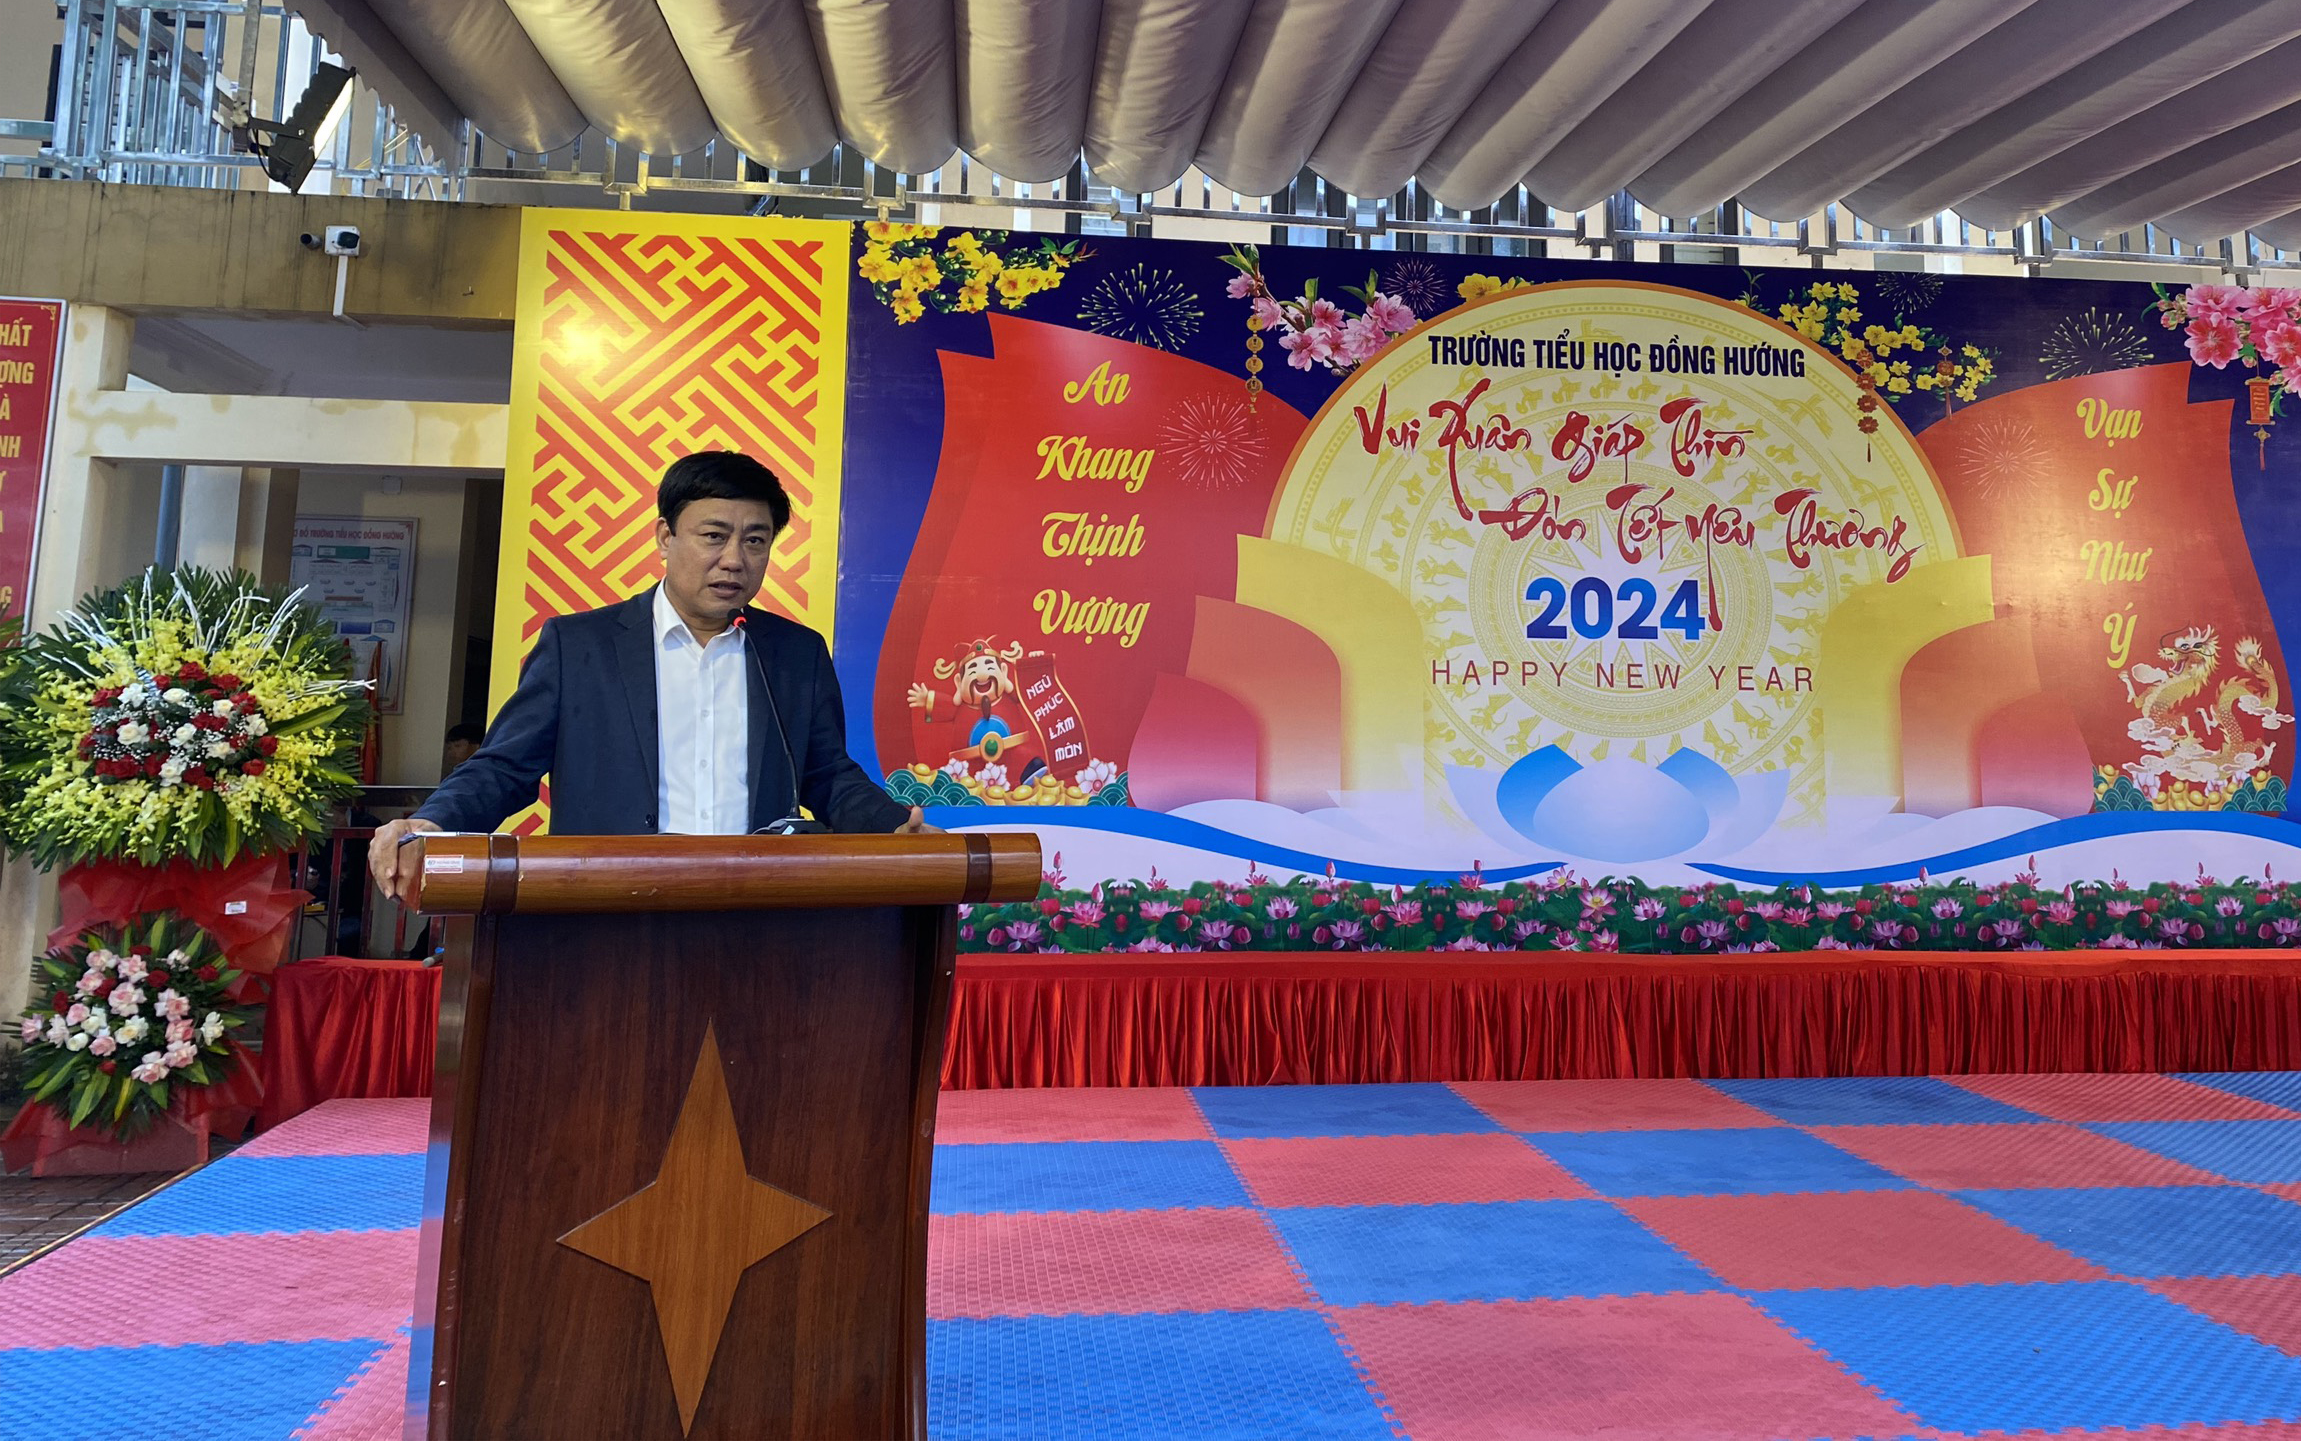 Ông Nguyễn Hồng Quảng - Hiệu trưởng Trường TH Đồng Hướng phát biểu tại chương trình